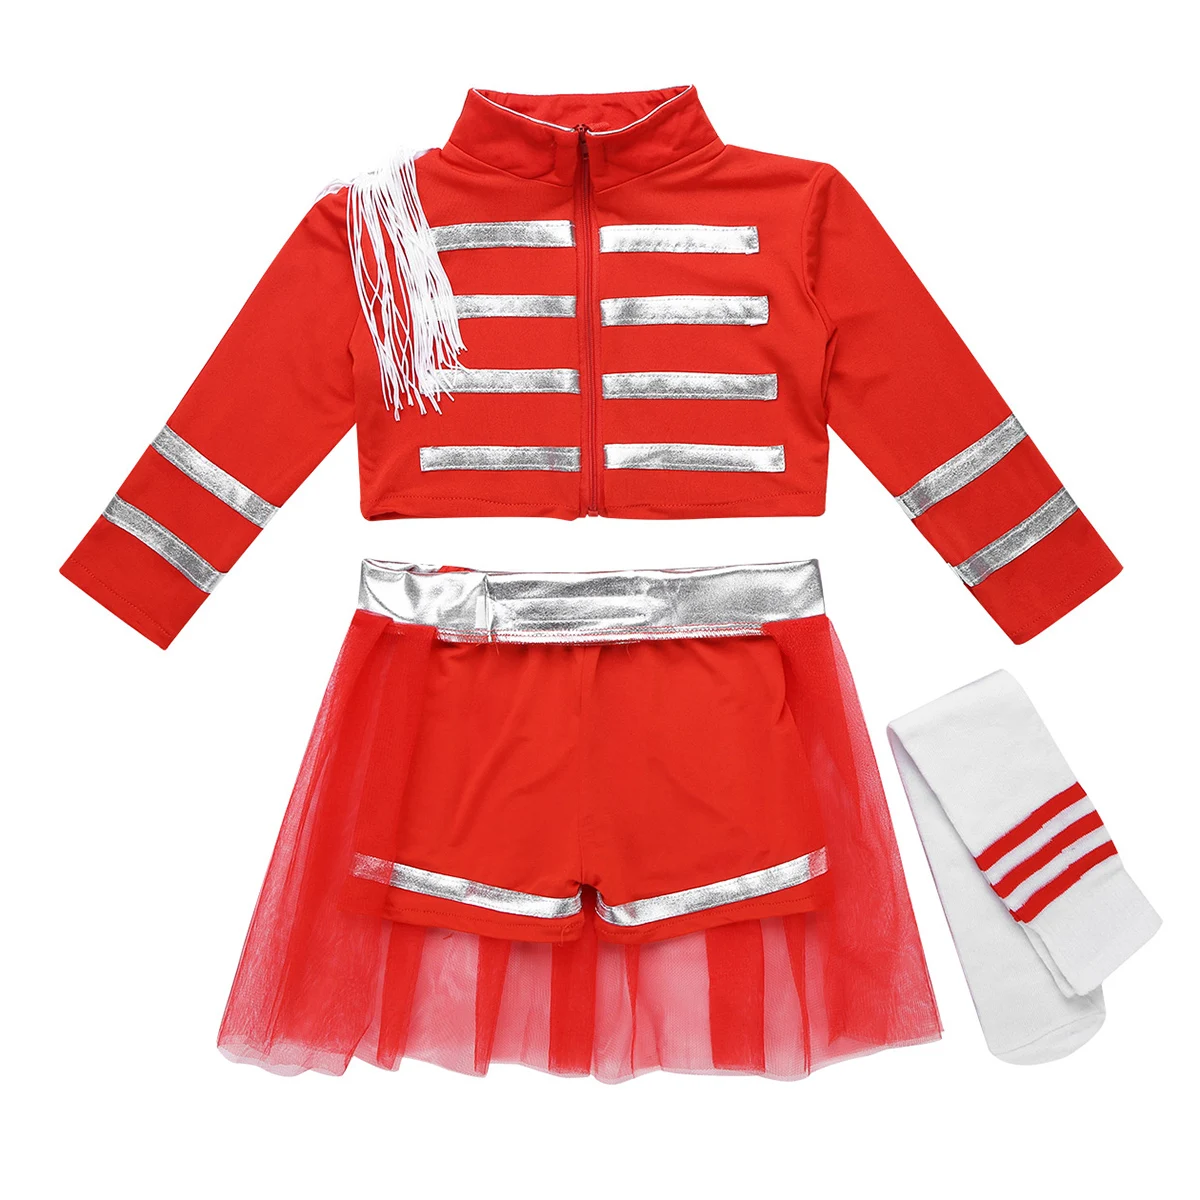 Дети девочки Черлидинг Современный Джаз Танец Униформа-костюм для косплея нарядное платье наряд укороченный топ и шорты сетчатая юбка, носки, комплект